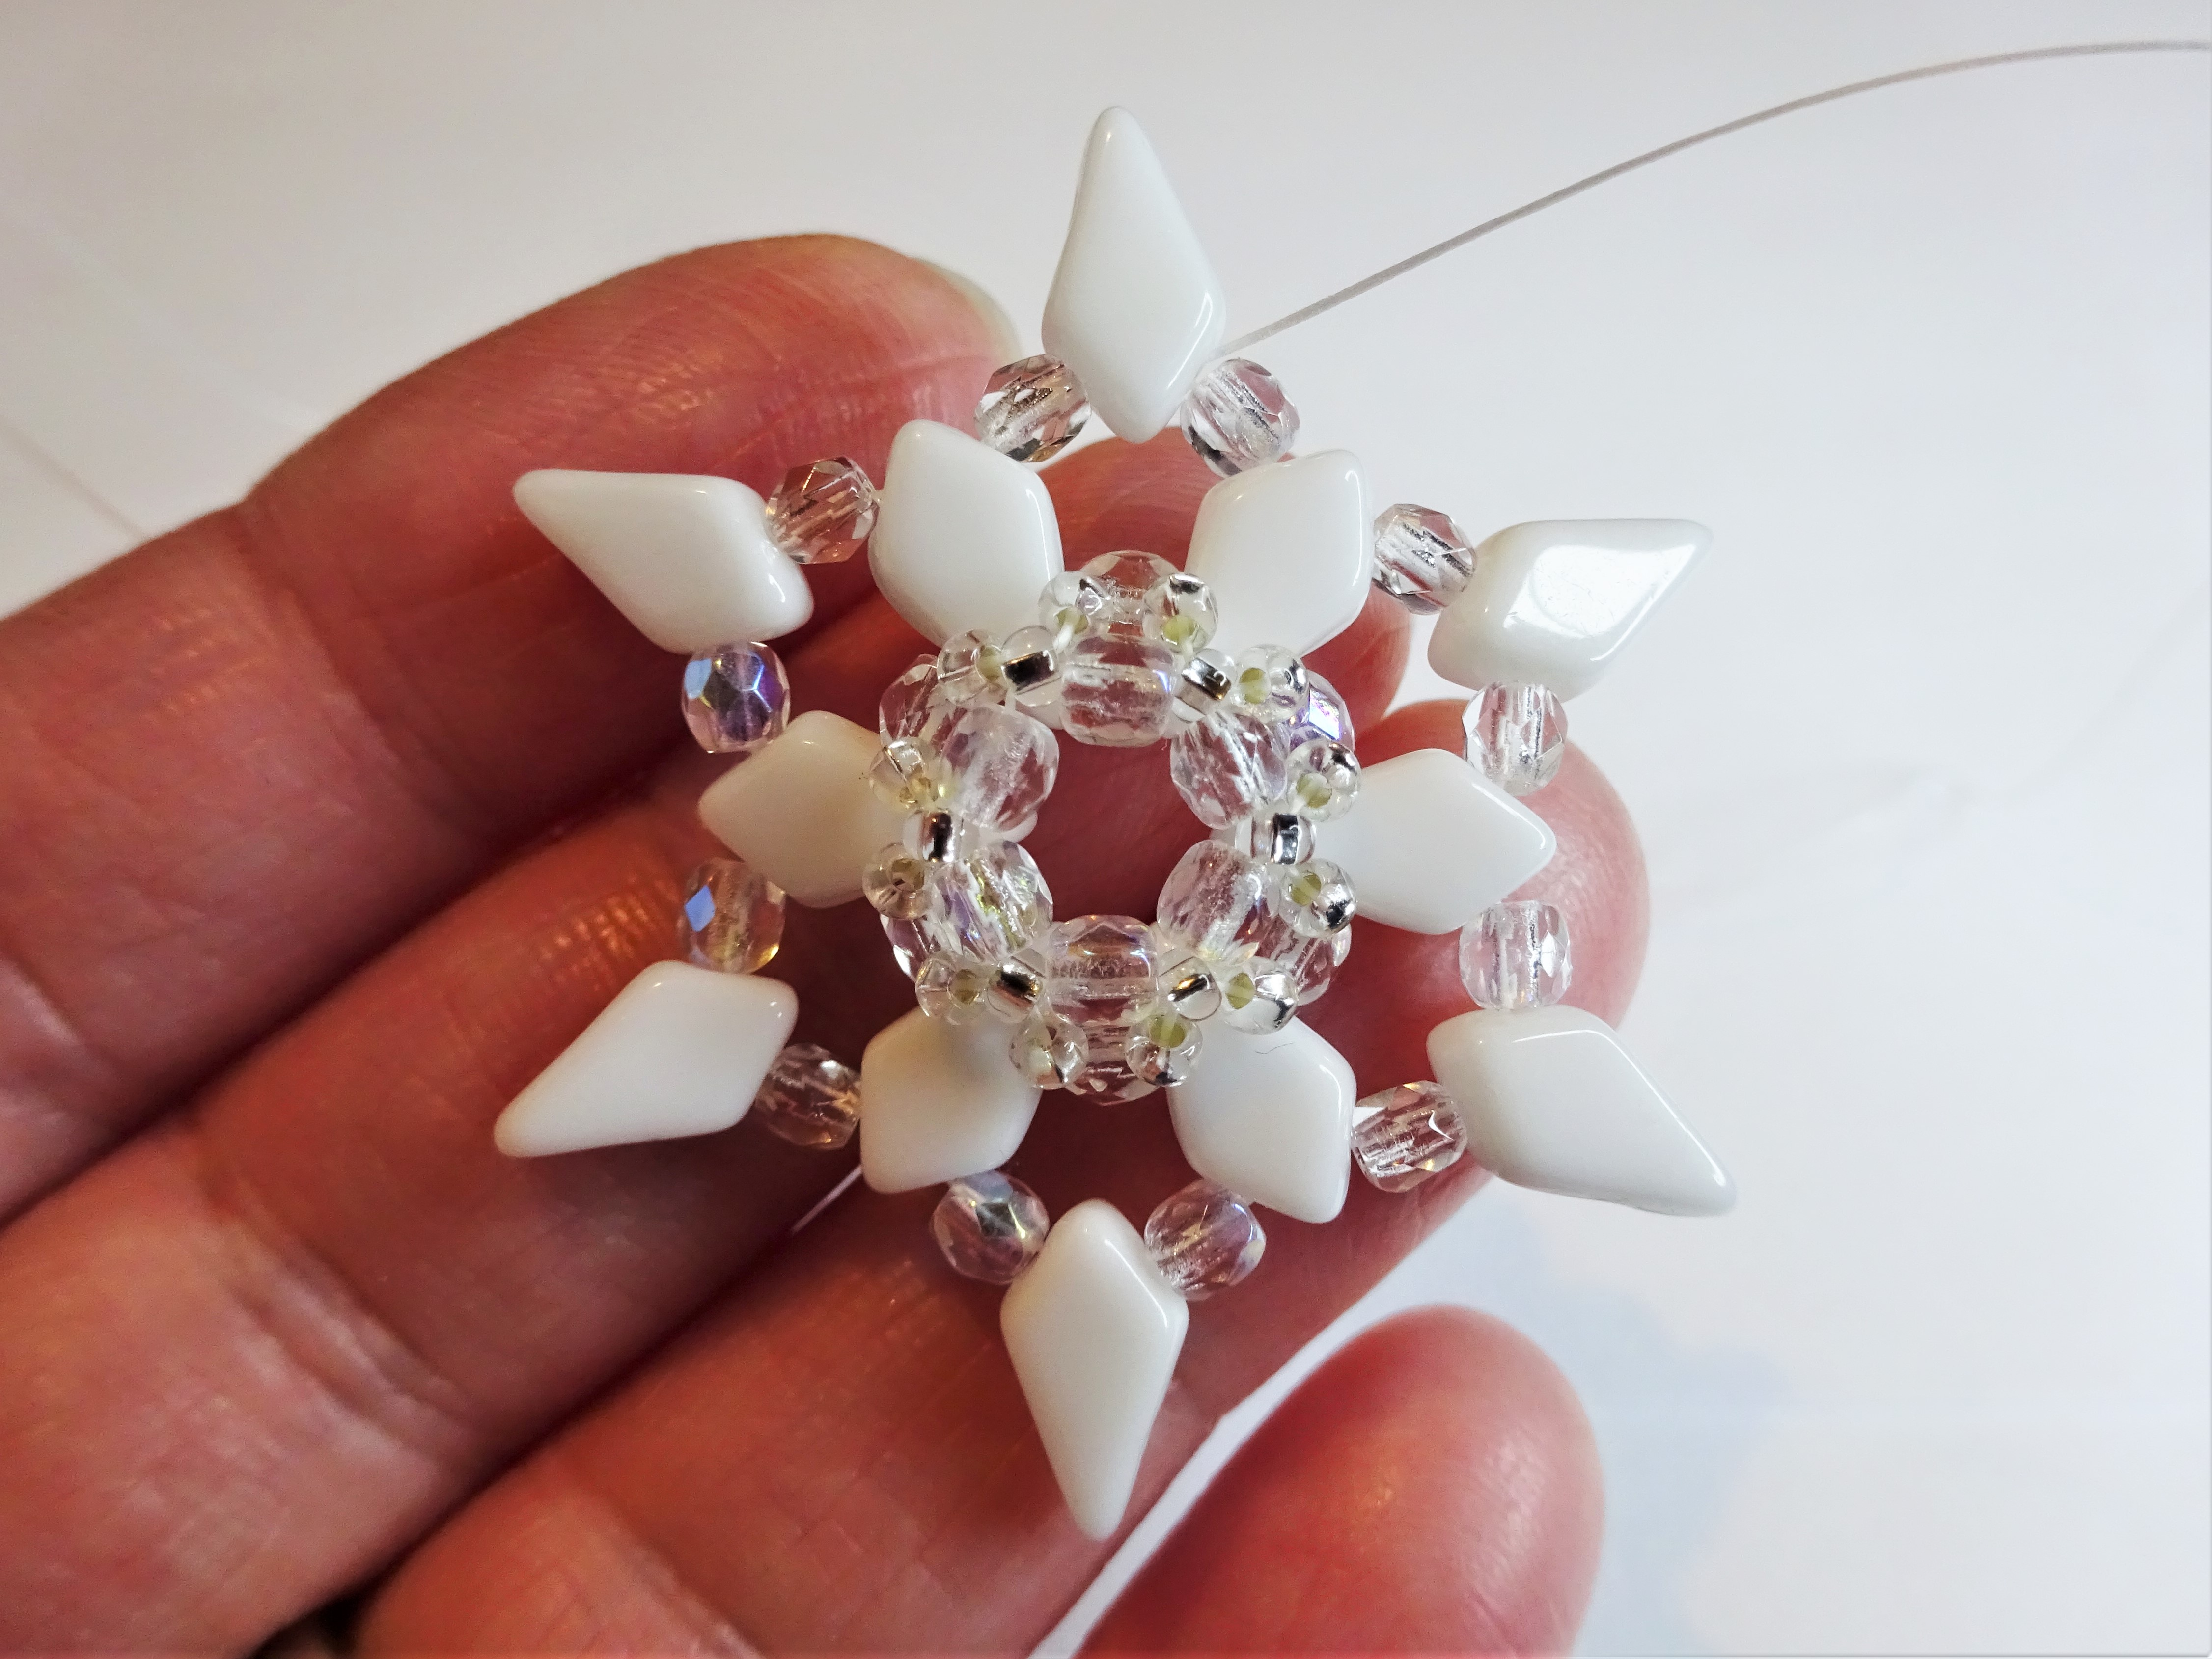 Beadweaving snowflake beadwork tutorial with kite beads